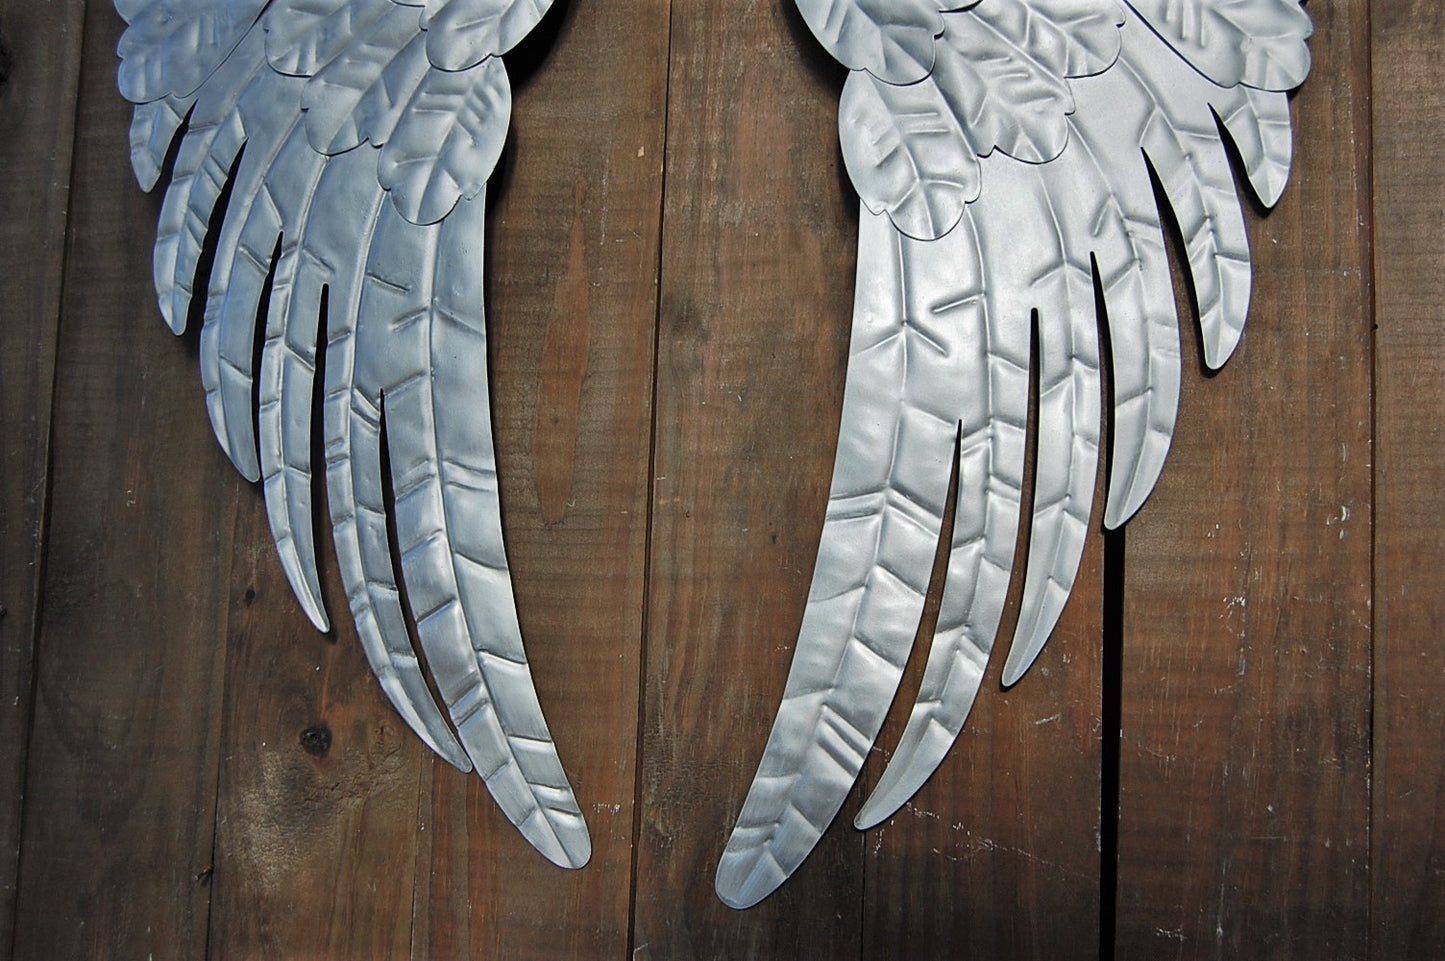 Rustic silver wings